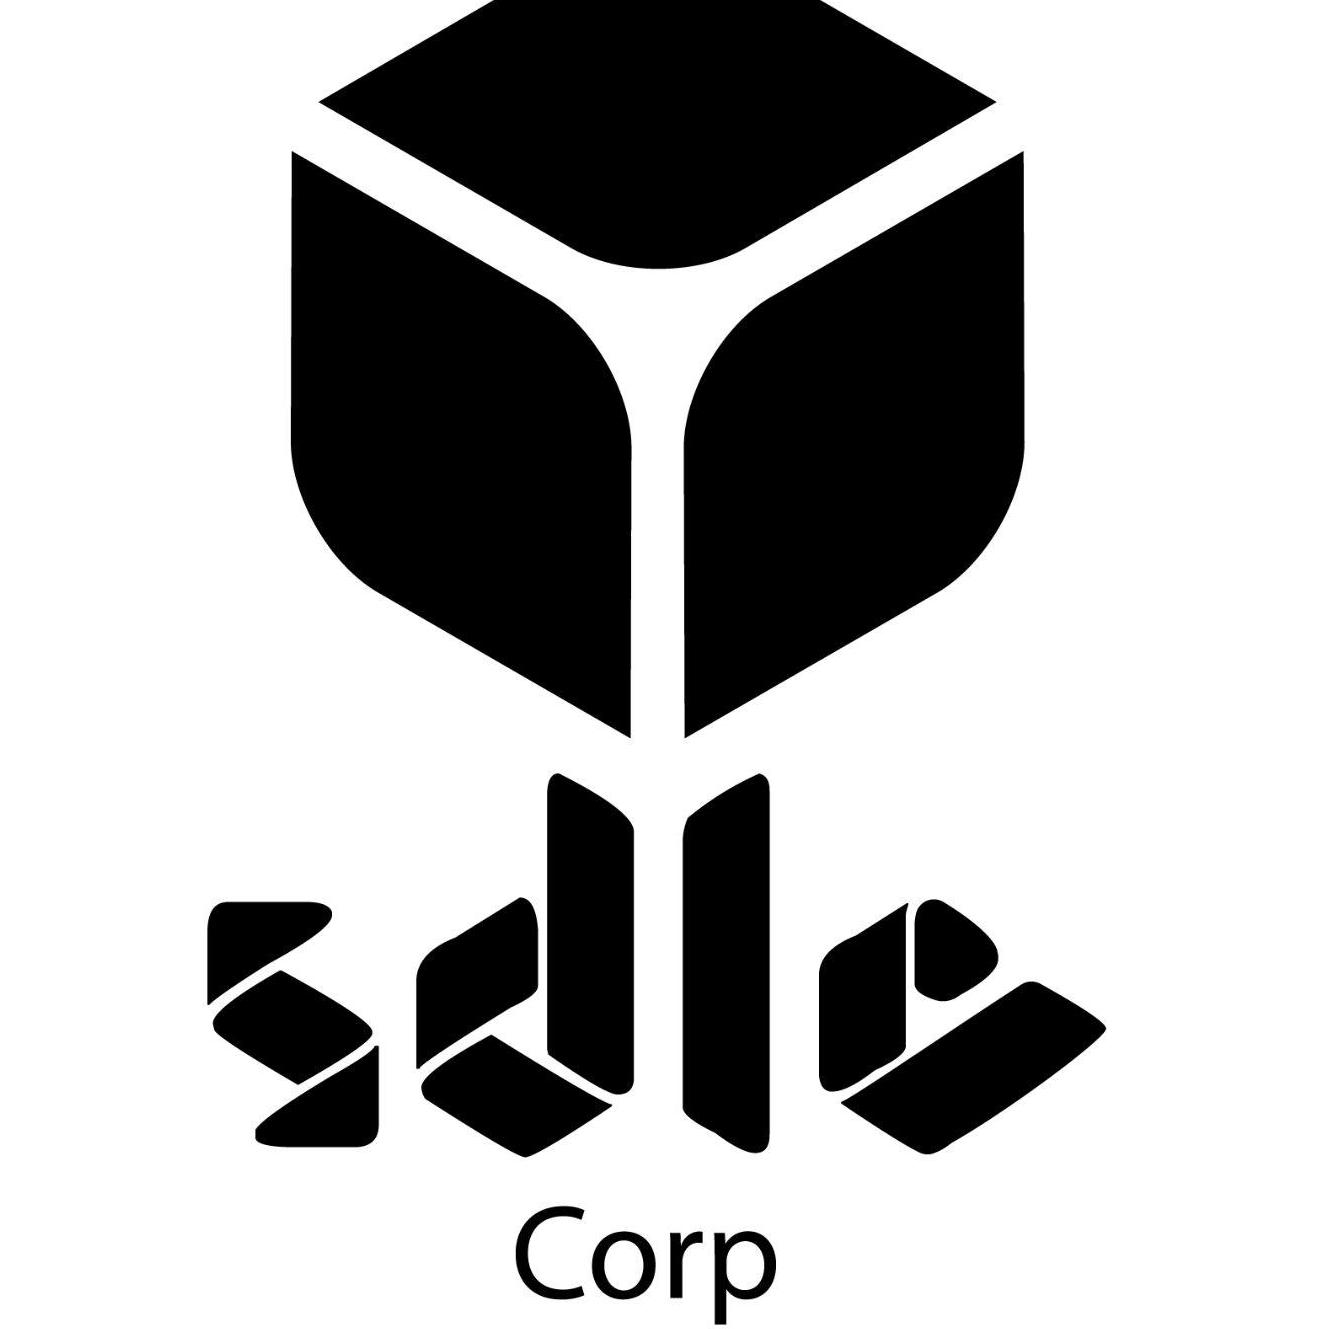 SDLC CORP